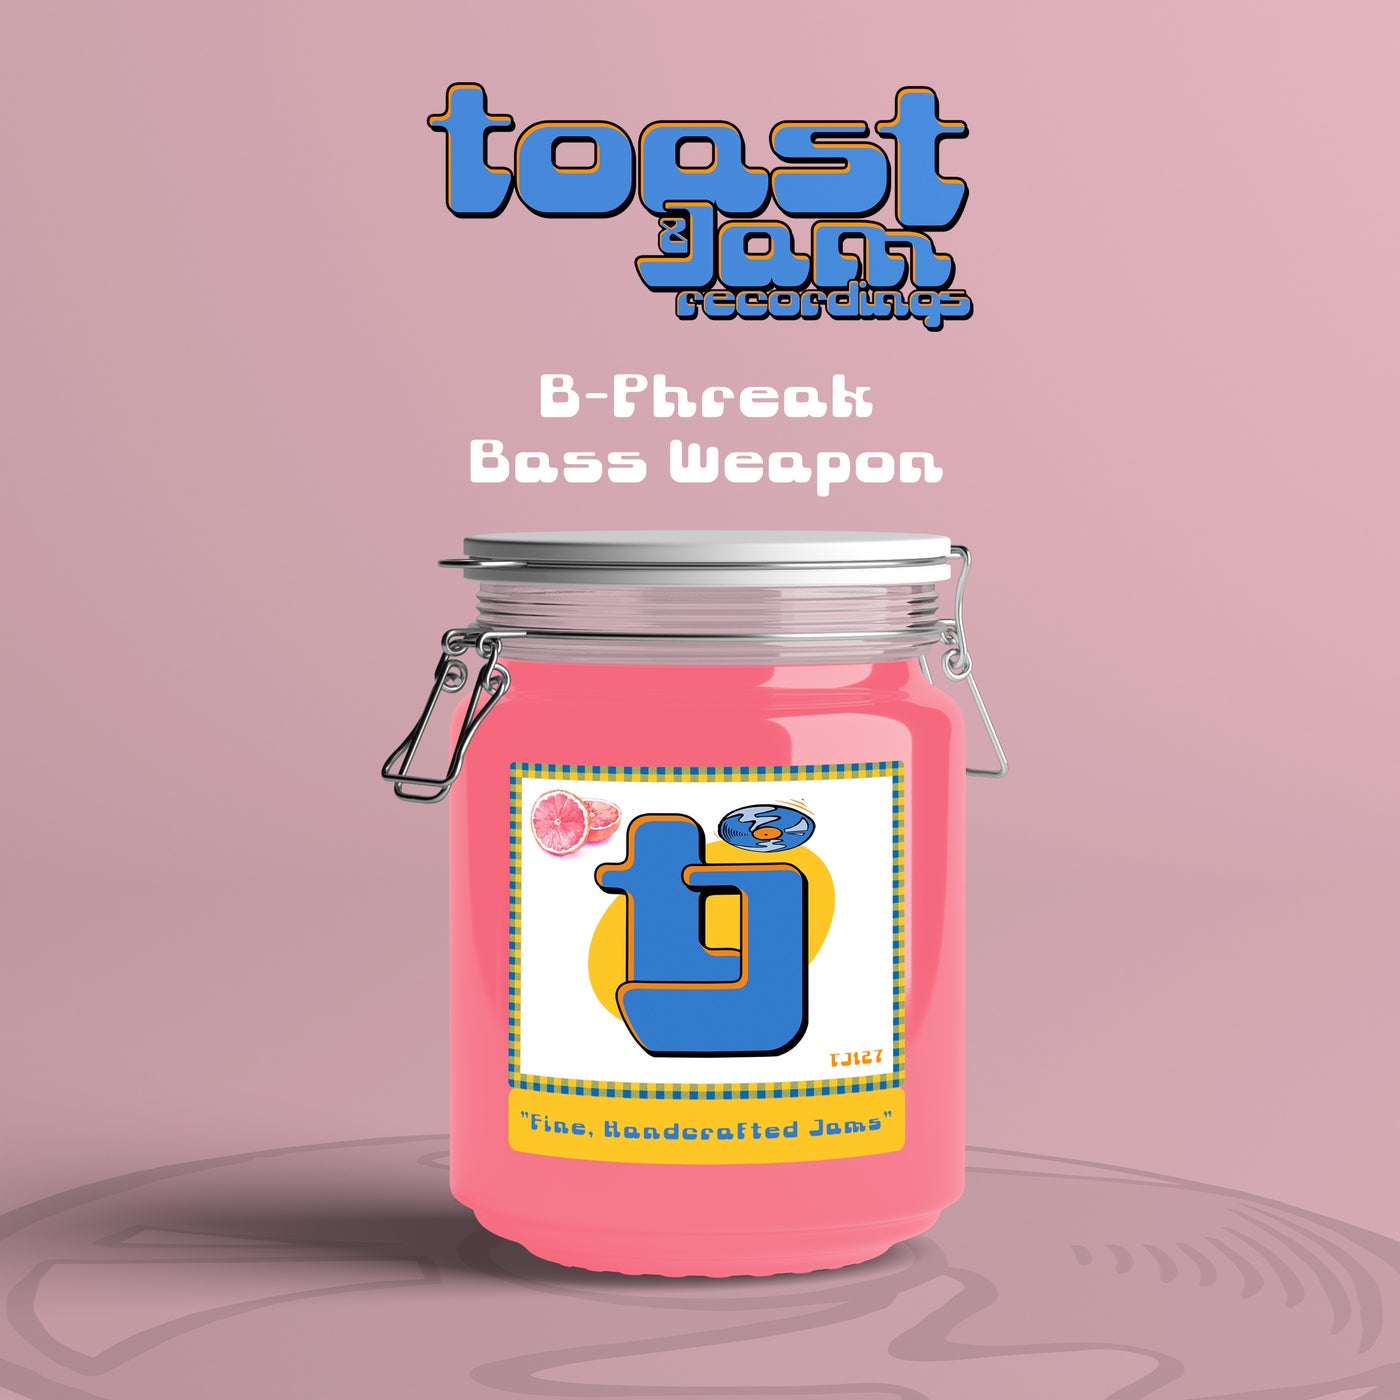 Bass Weapon